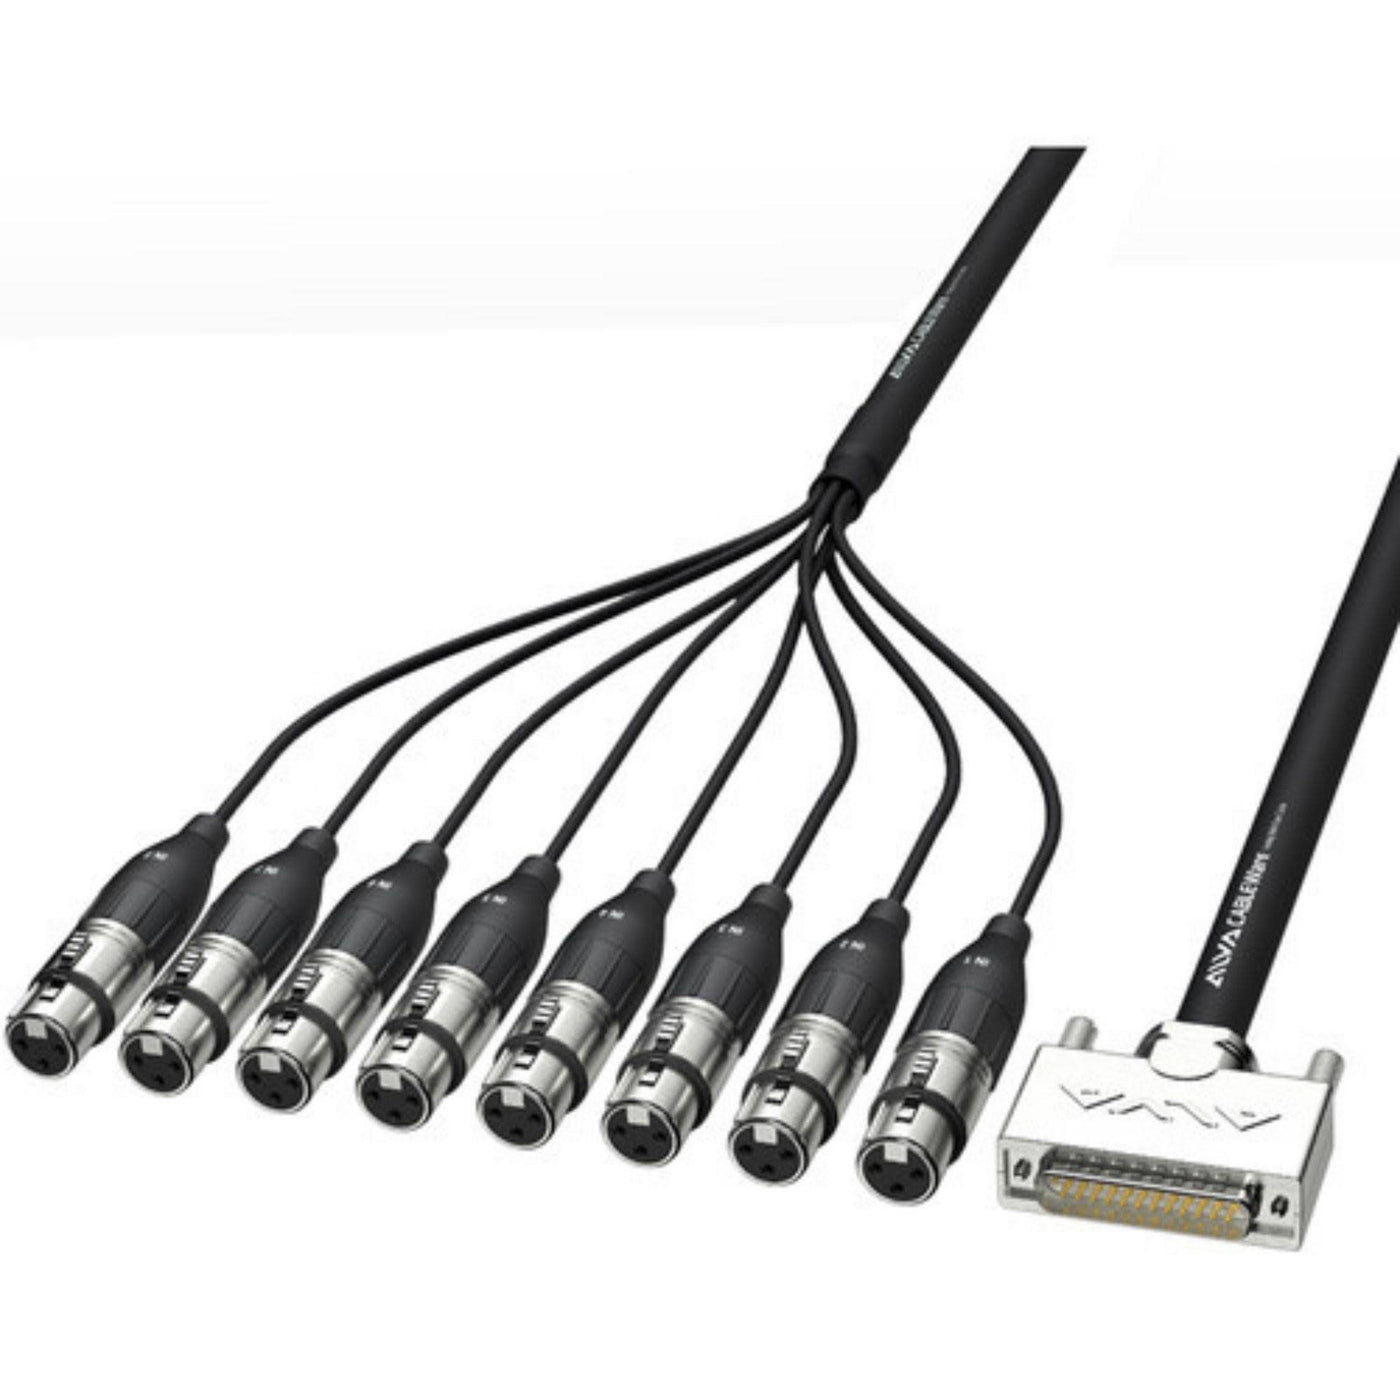 Alva AI25-8XPRO5 Analog Multi-Core Cable, D-sub25 Male to XLR-3 Female, 5m